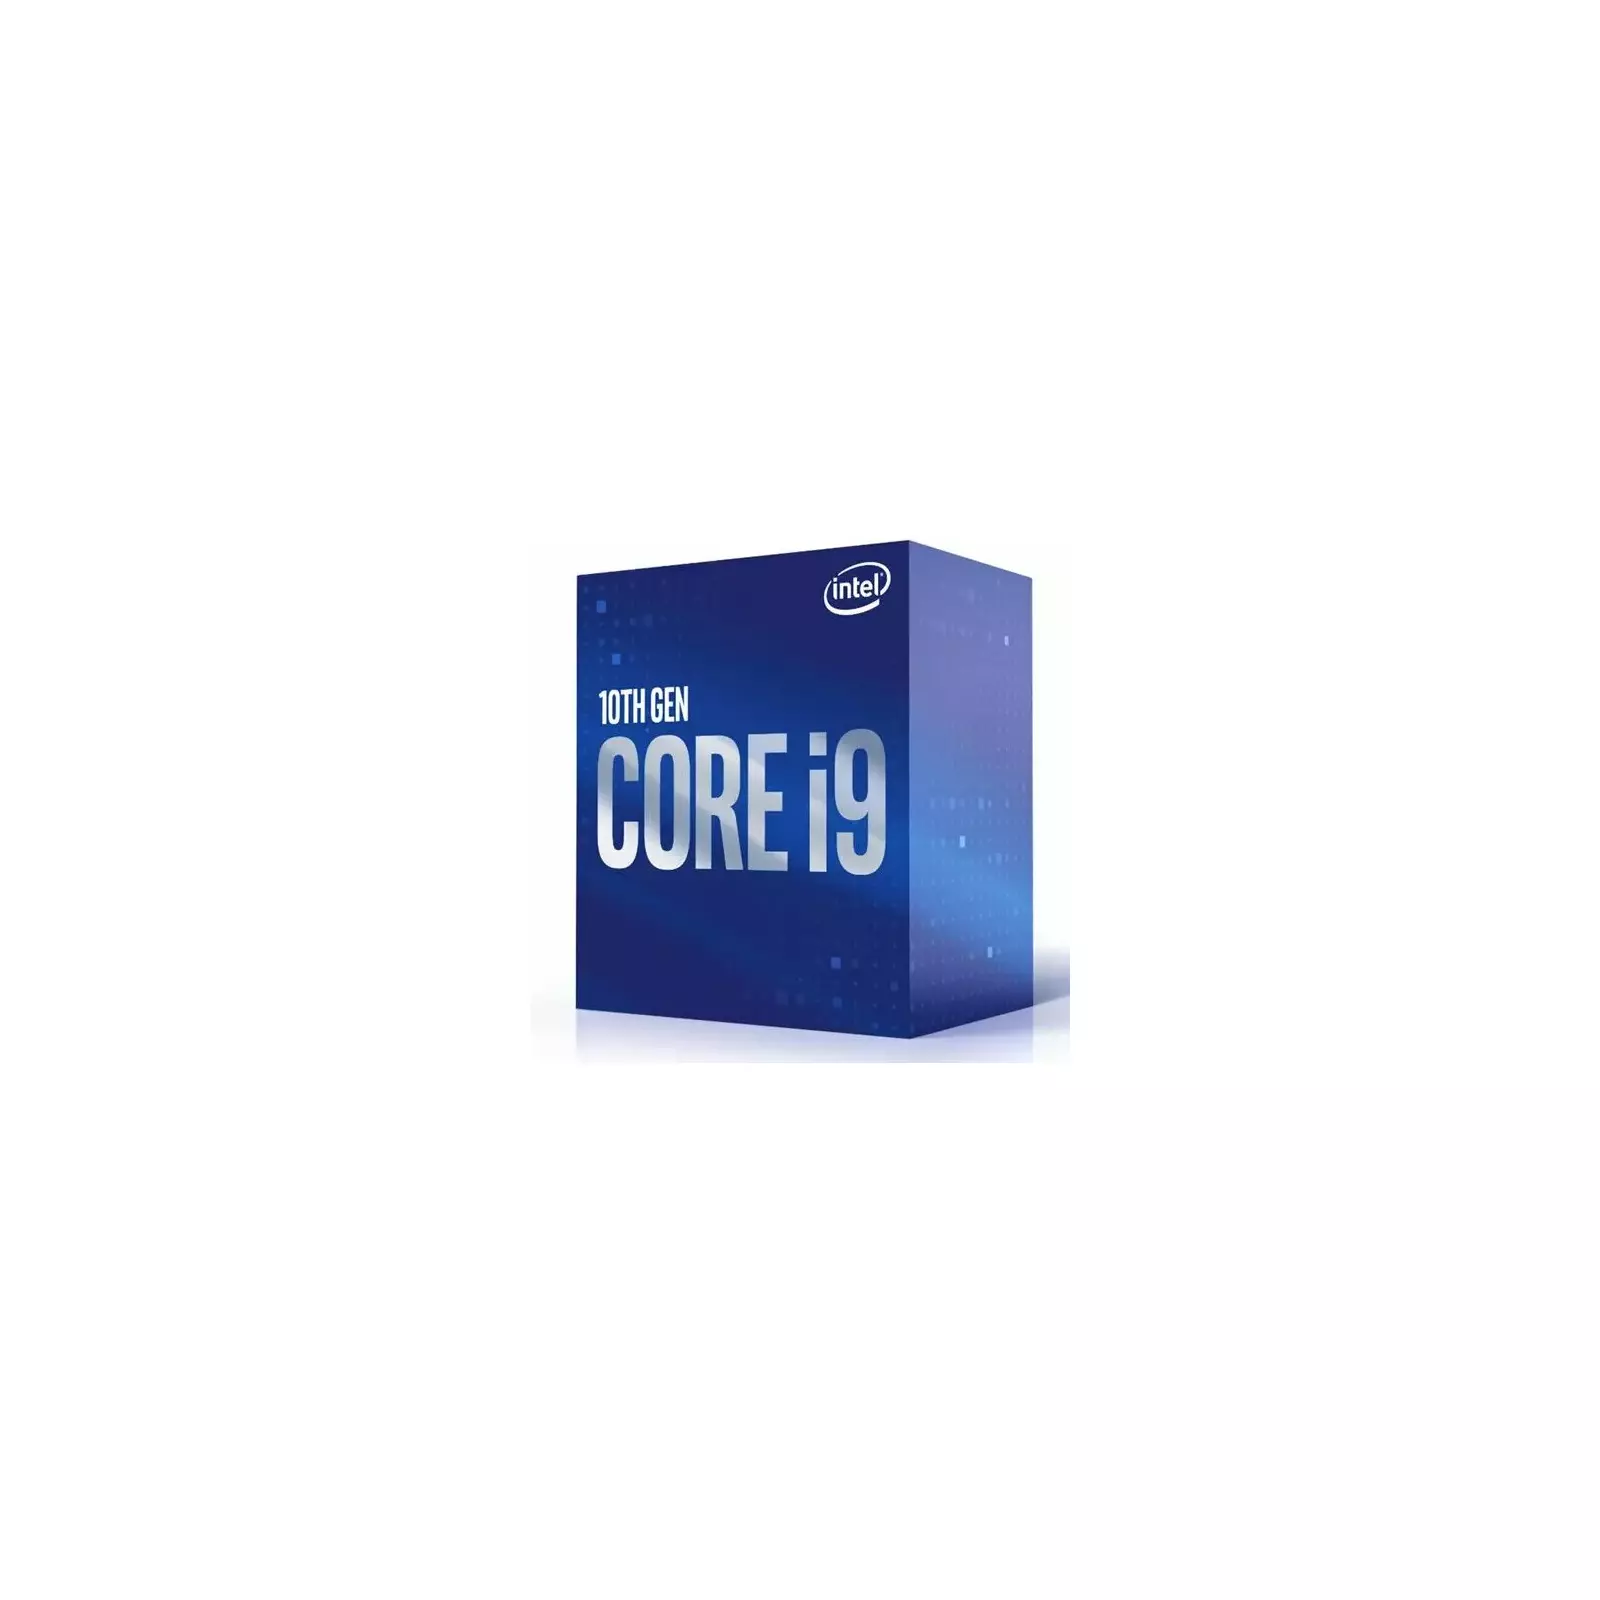 Intel Core i9-10900 - Core i9 10th Gen Comet Lake 10-Core 2.8 GHz LGA 1200  65W Intel UHD Graphics 630 Desktop Processor - BX8070110900 